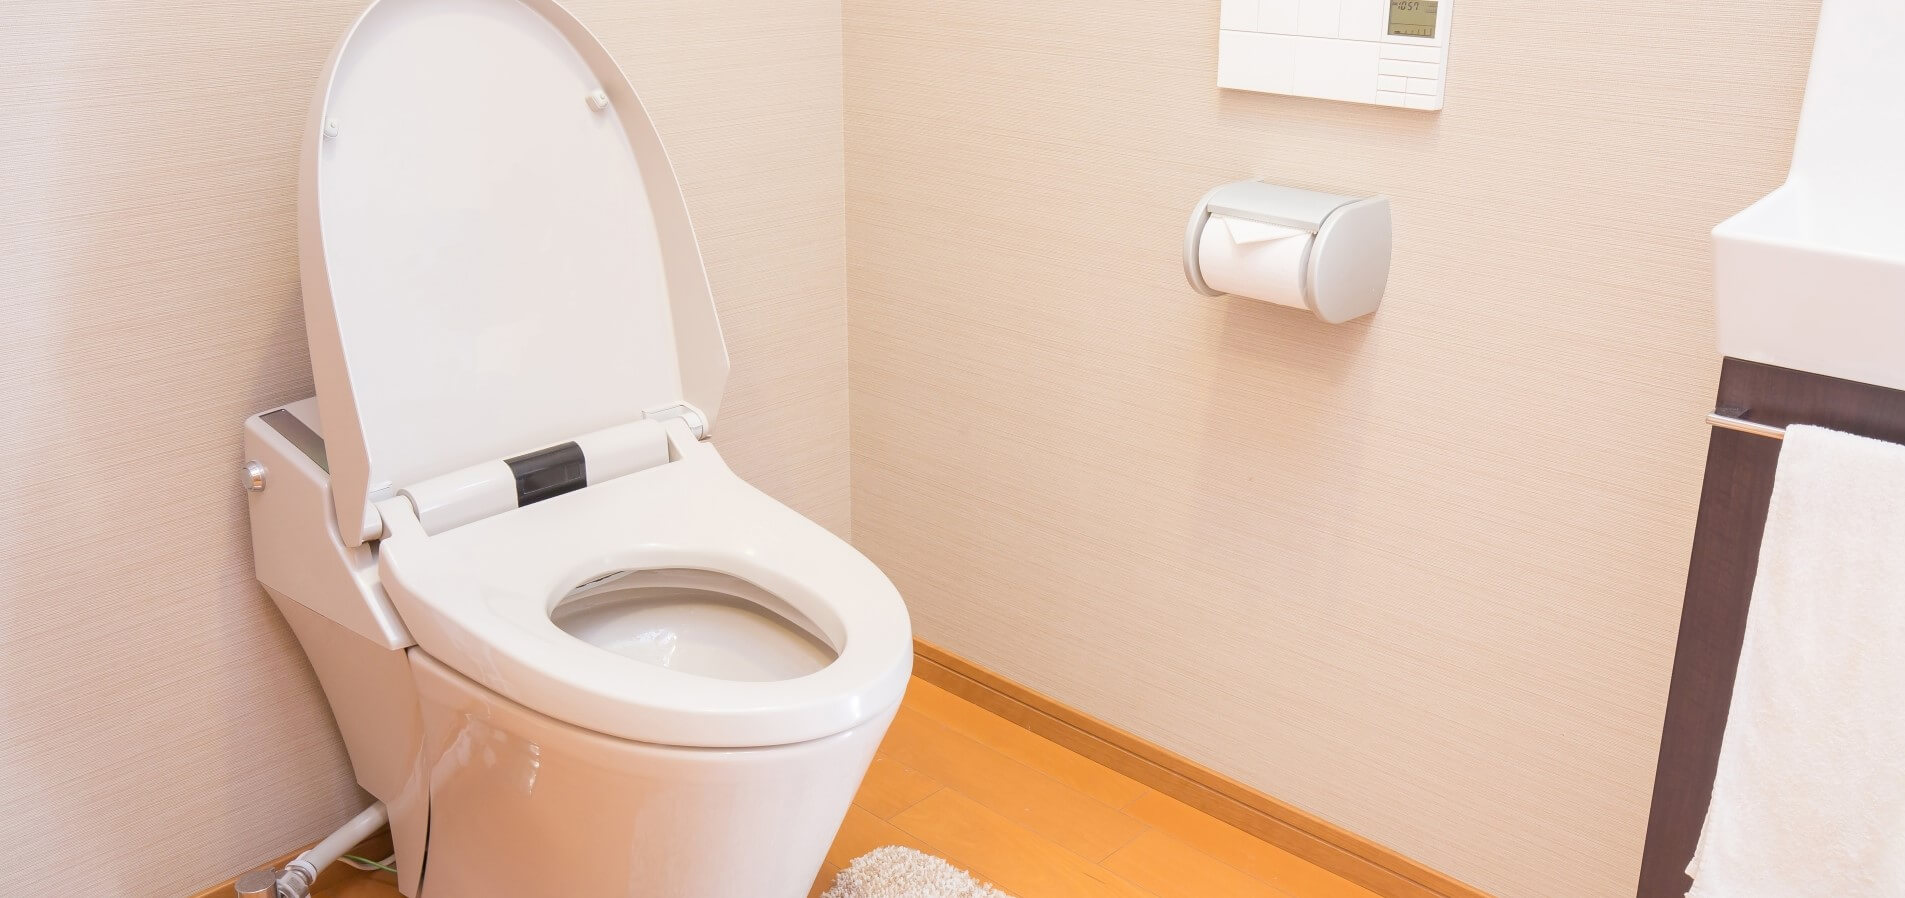 トイレのつまり・水漏れ修理と料金表 ｜ザットマン